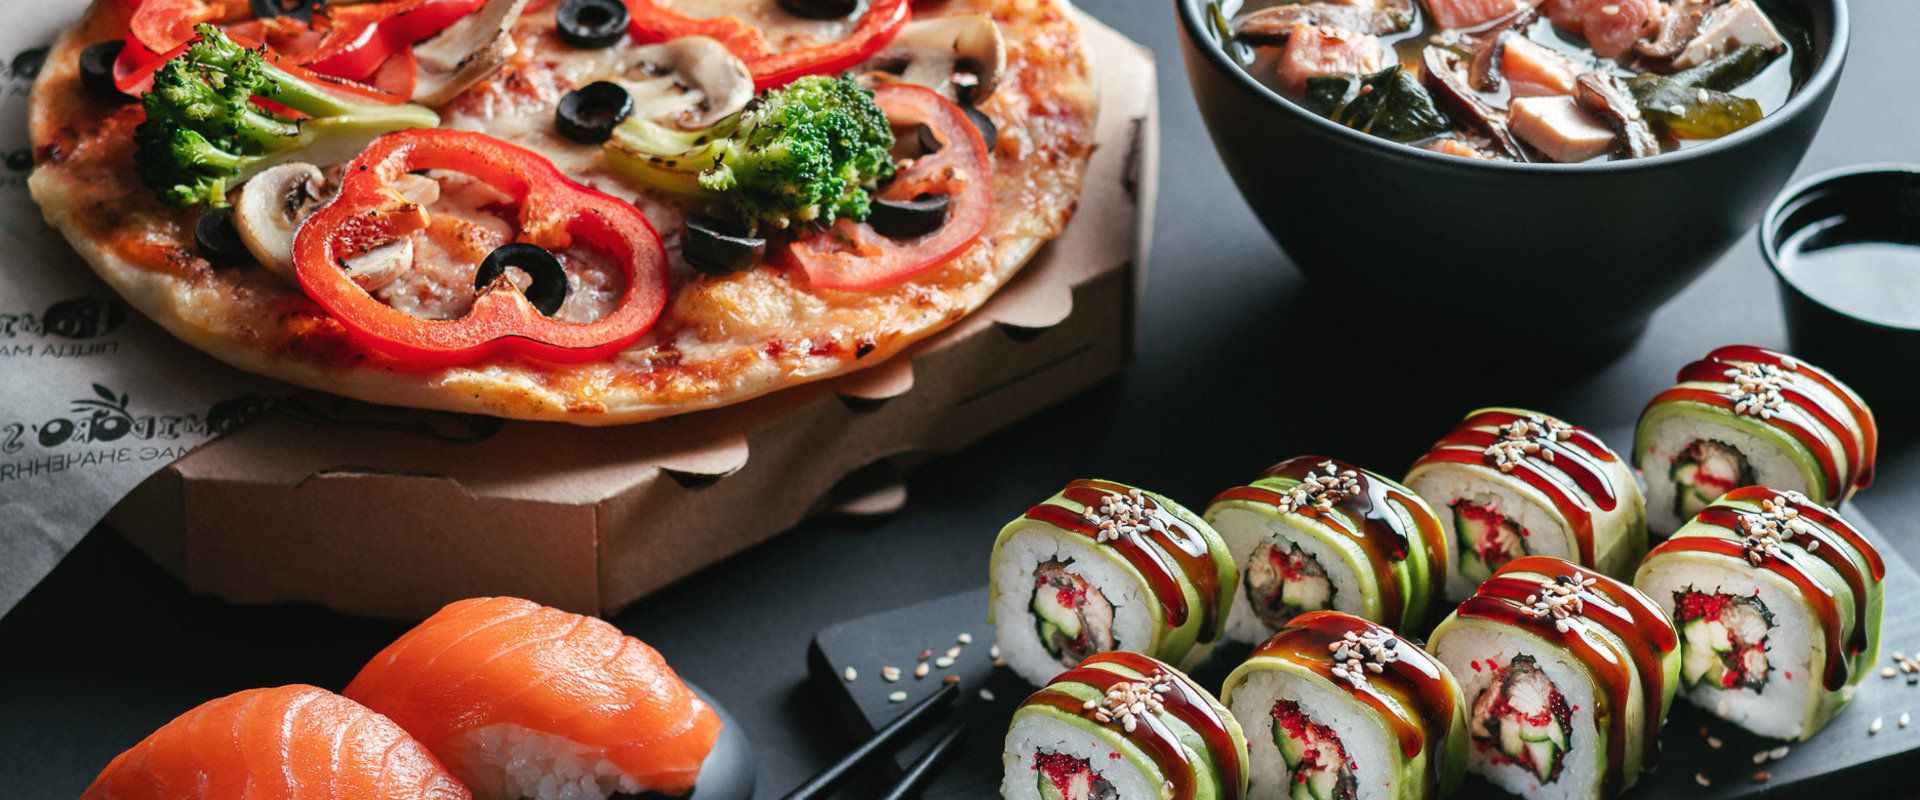 фотография пиццы и суши фото 99